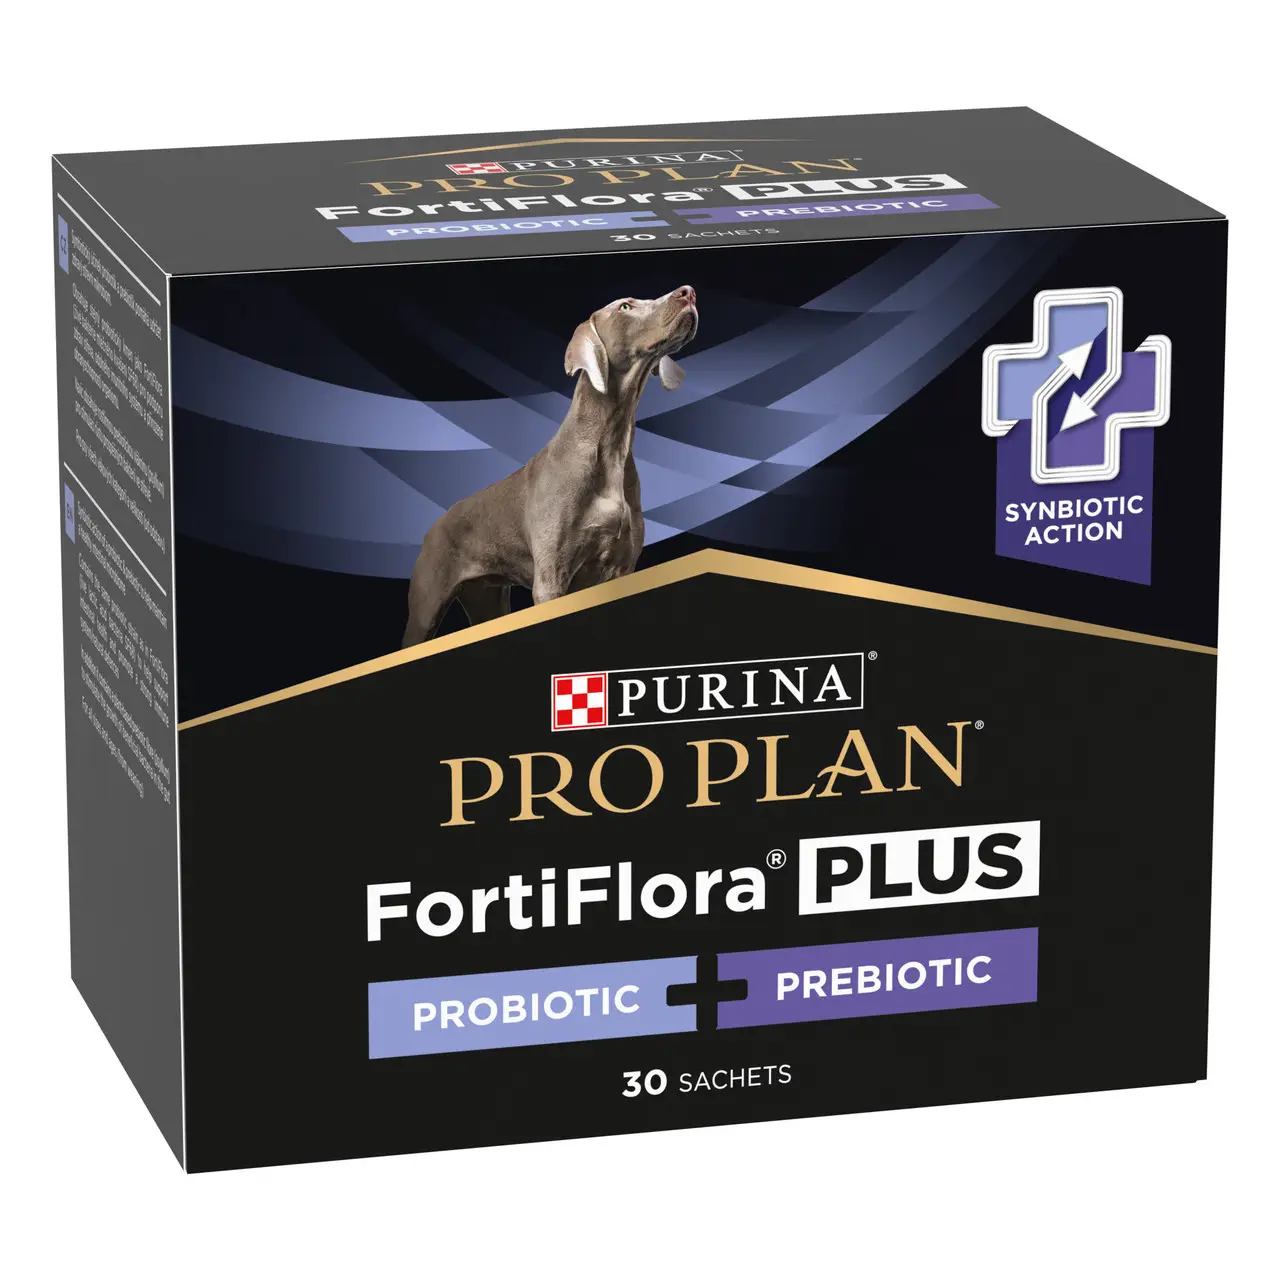 Pro Plan FortiFlora Plus пробіотик з пребіотиком для собак та цуценят (30шт)1